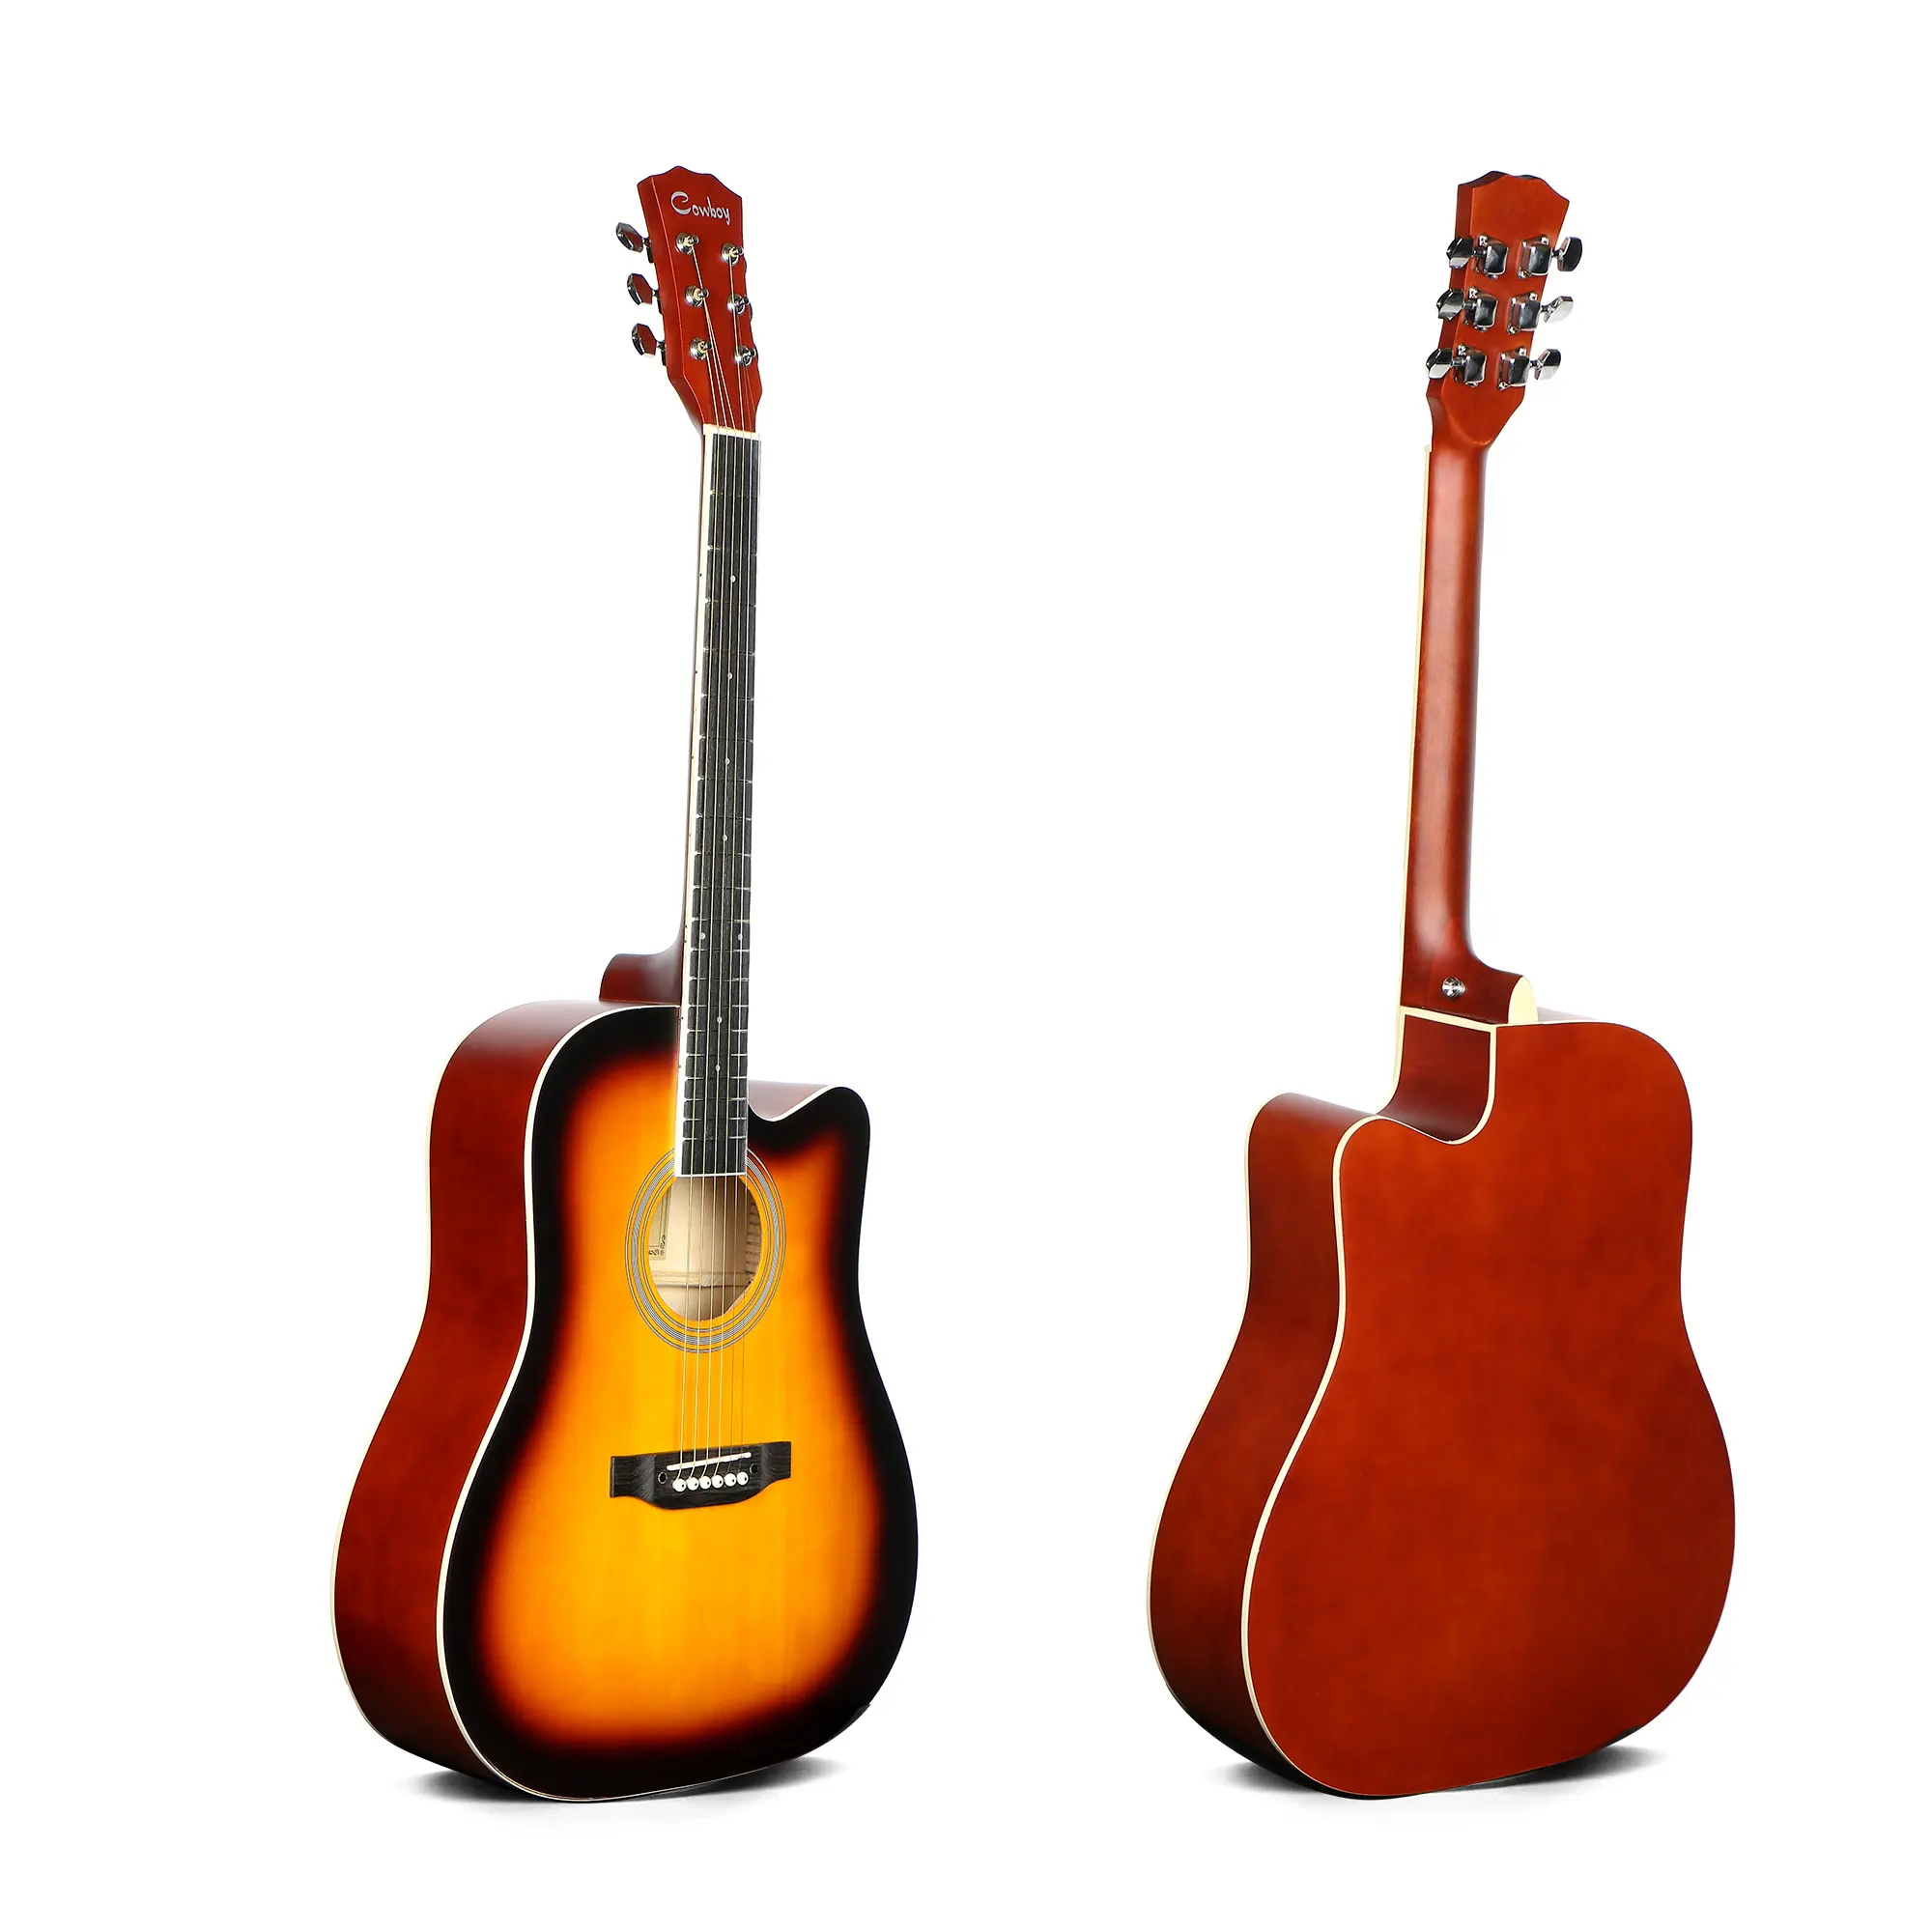 Deviserギター工場2021新モデルカウボーイブランドアコースティックギター41インチEQ楽器ギター取り付け可能